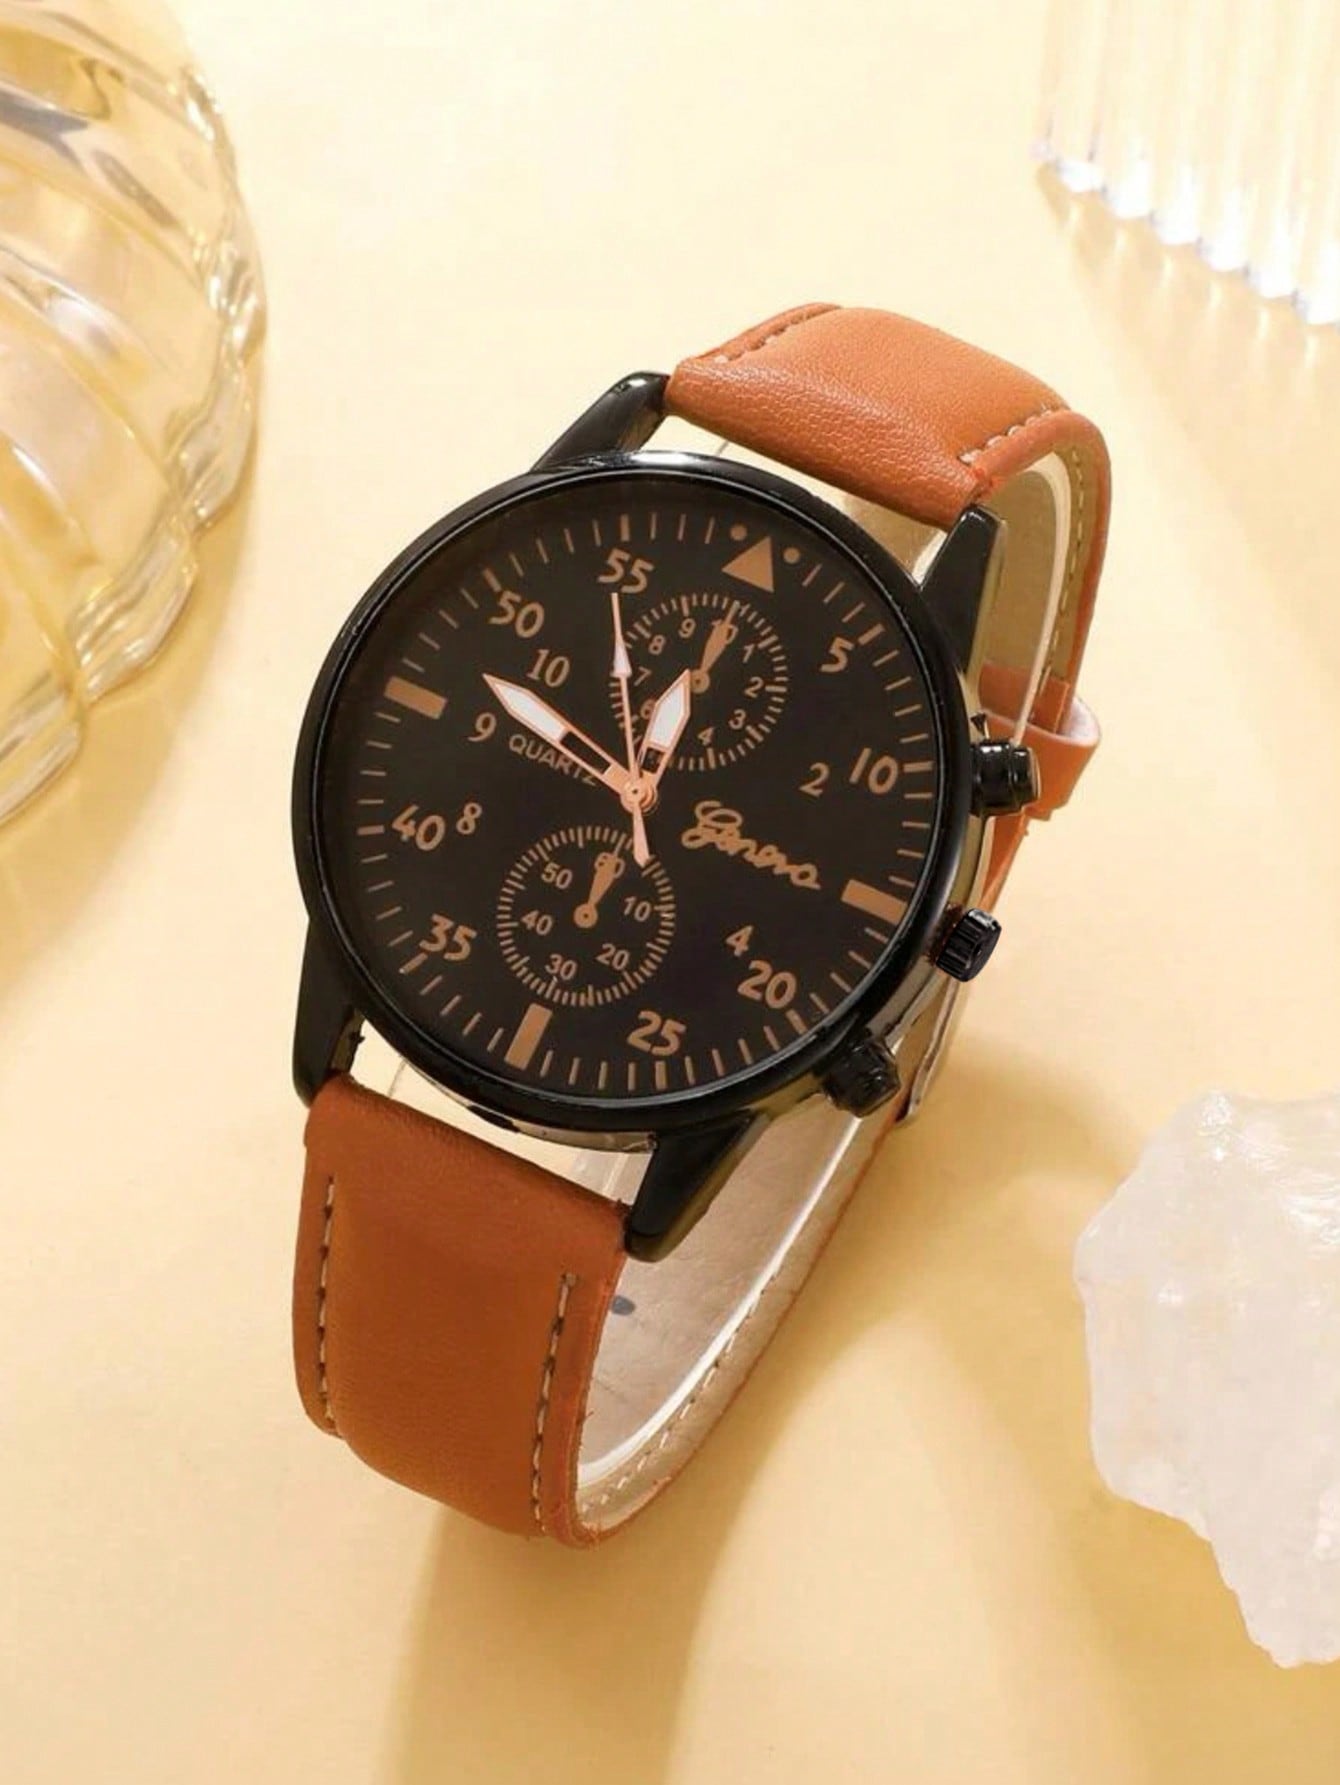 4pcs Set New Men Watch Luxury Bracelet Set Fashion Business Brown Leather Quartz Wrist Watches for Men Gift Set